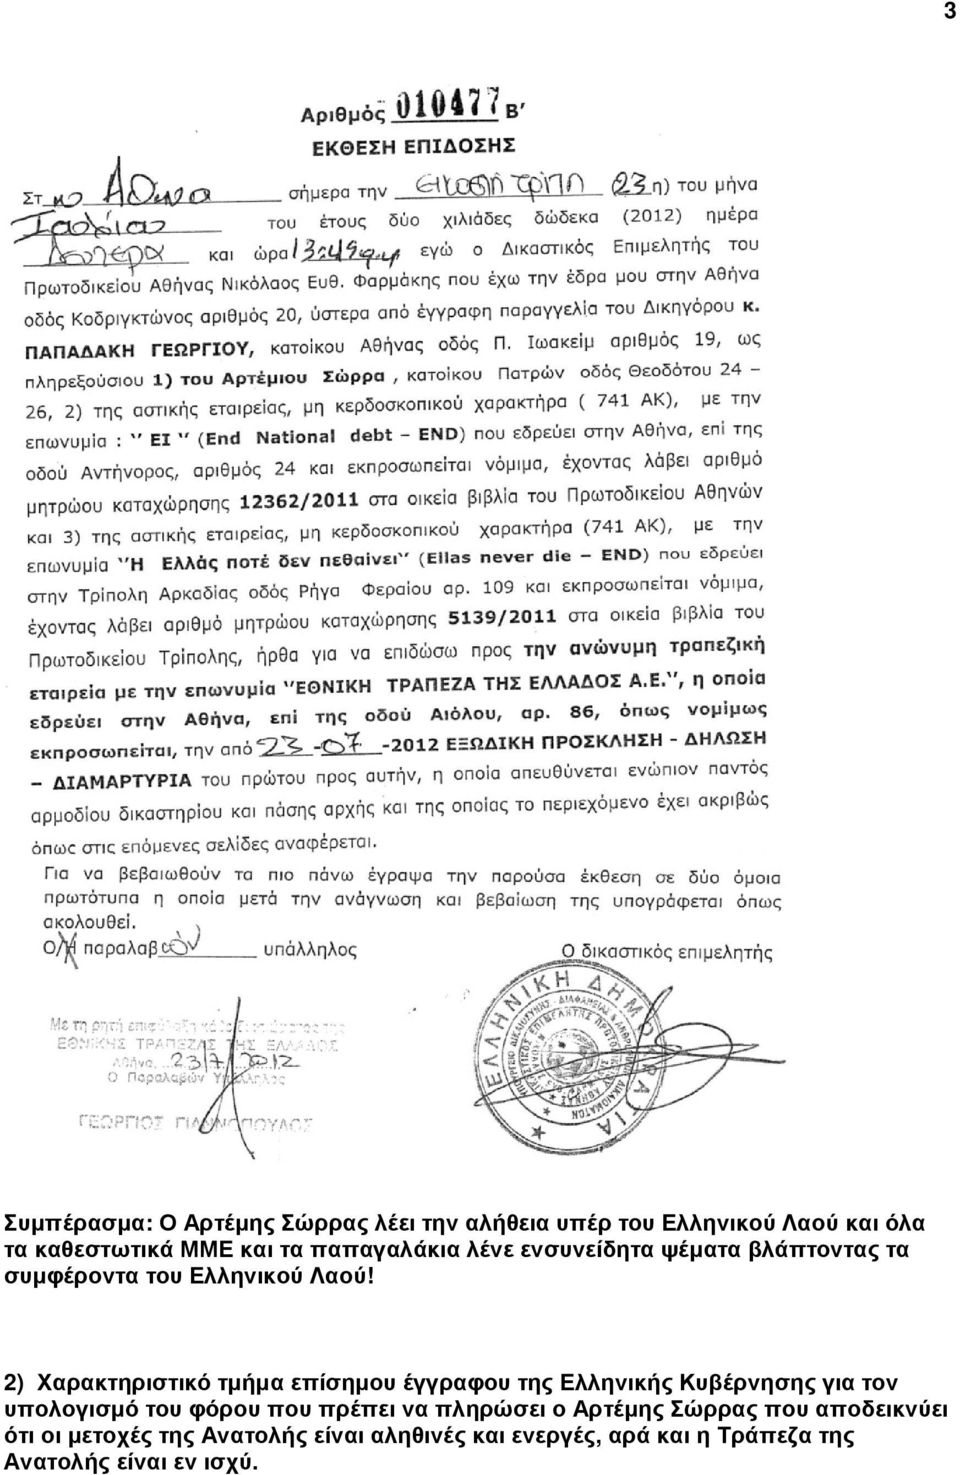 2) Χαρακτηριστικό τµήµα επίσηµου έγγραφου της Ελληνικής Κυβέρνησης για τον υπολογισµό του φόρου που πρέπει να